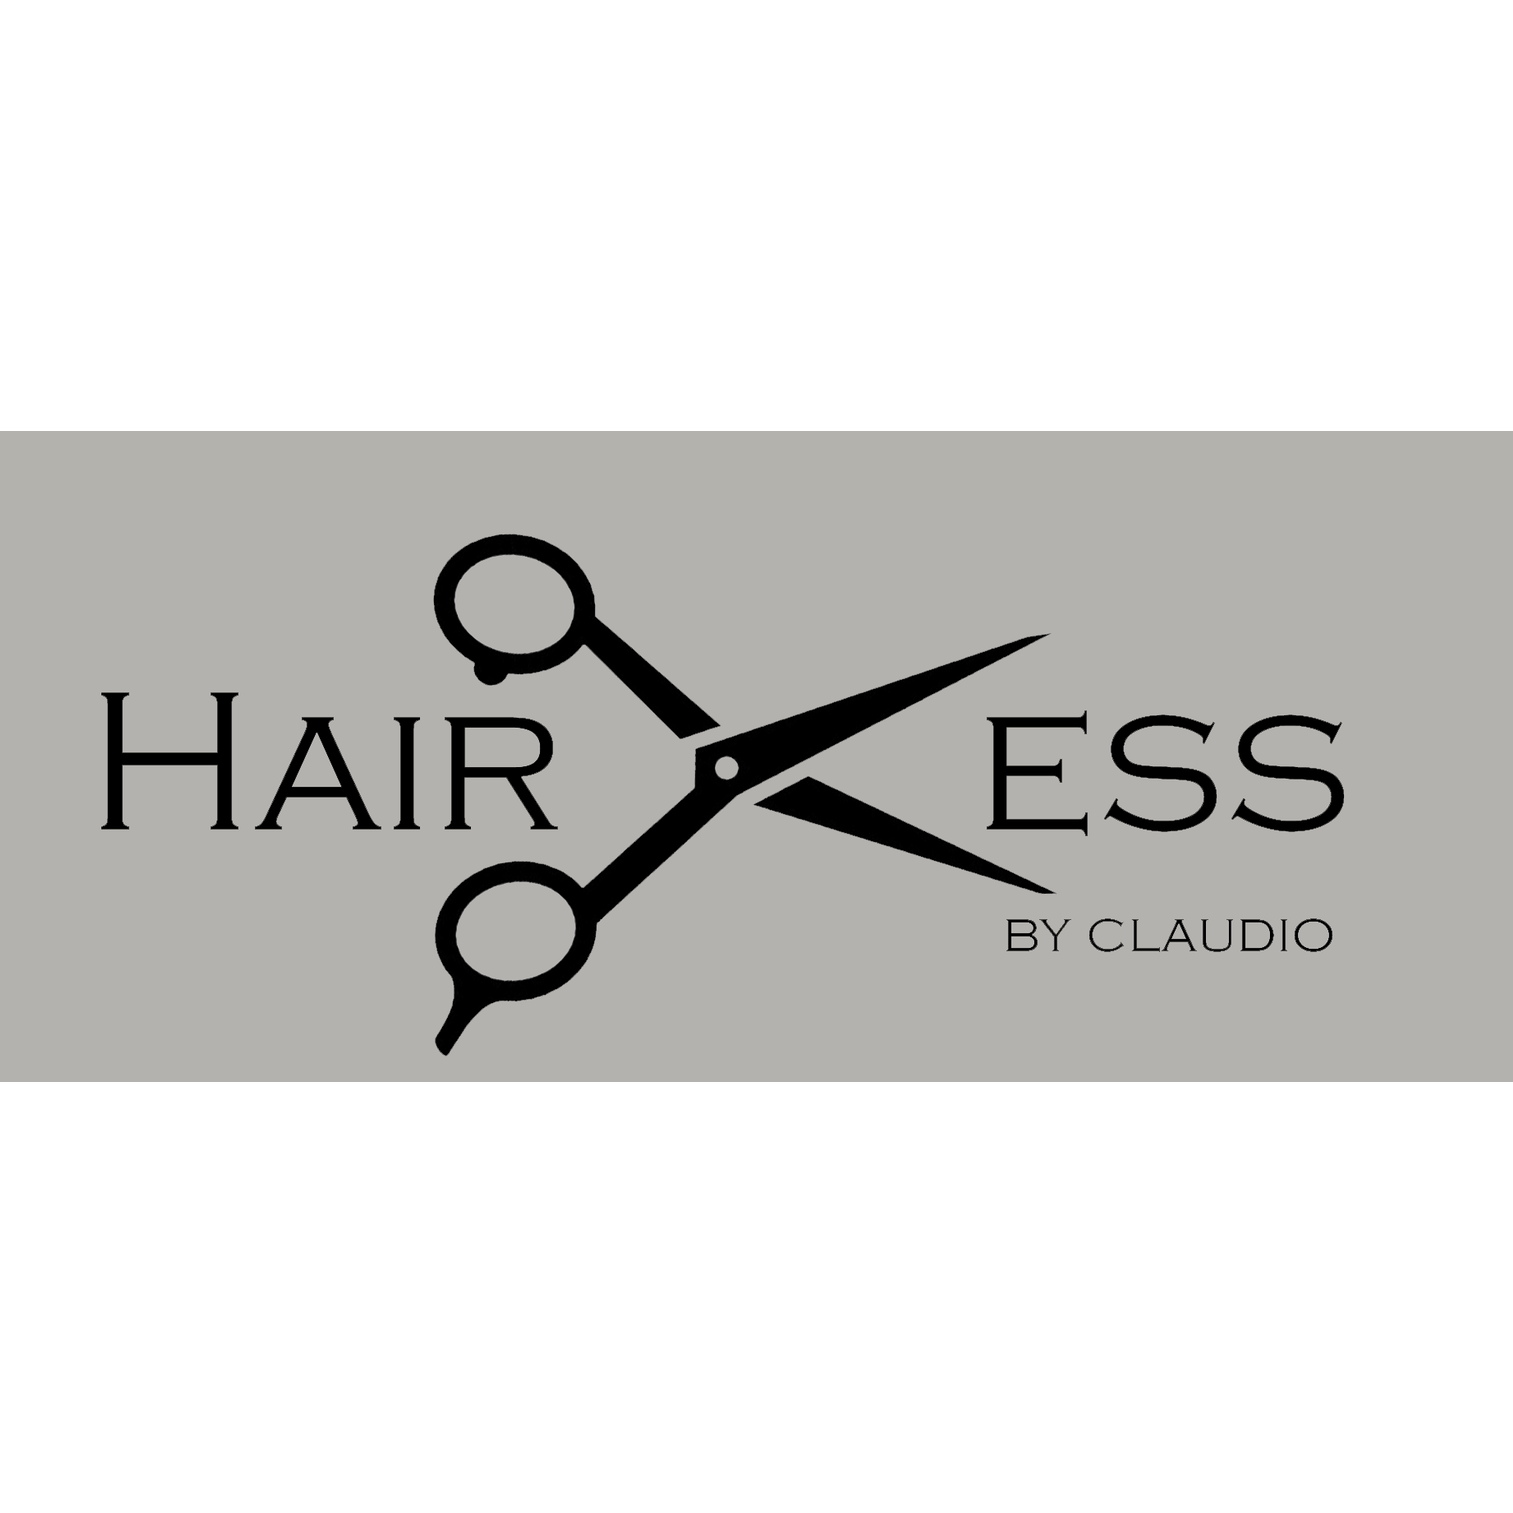 'Hairless by Claudio' Uetz Logo